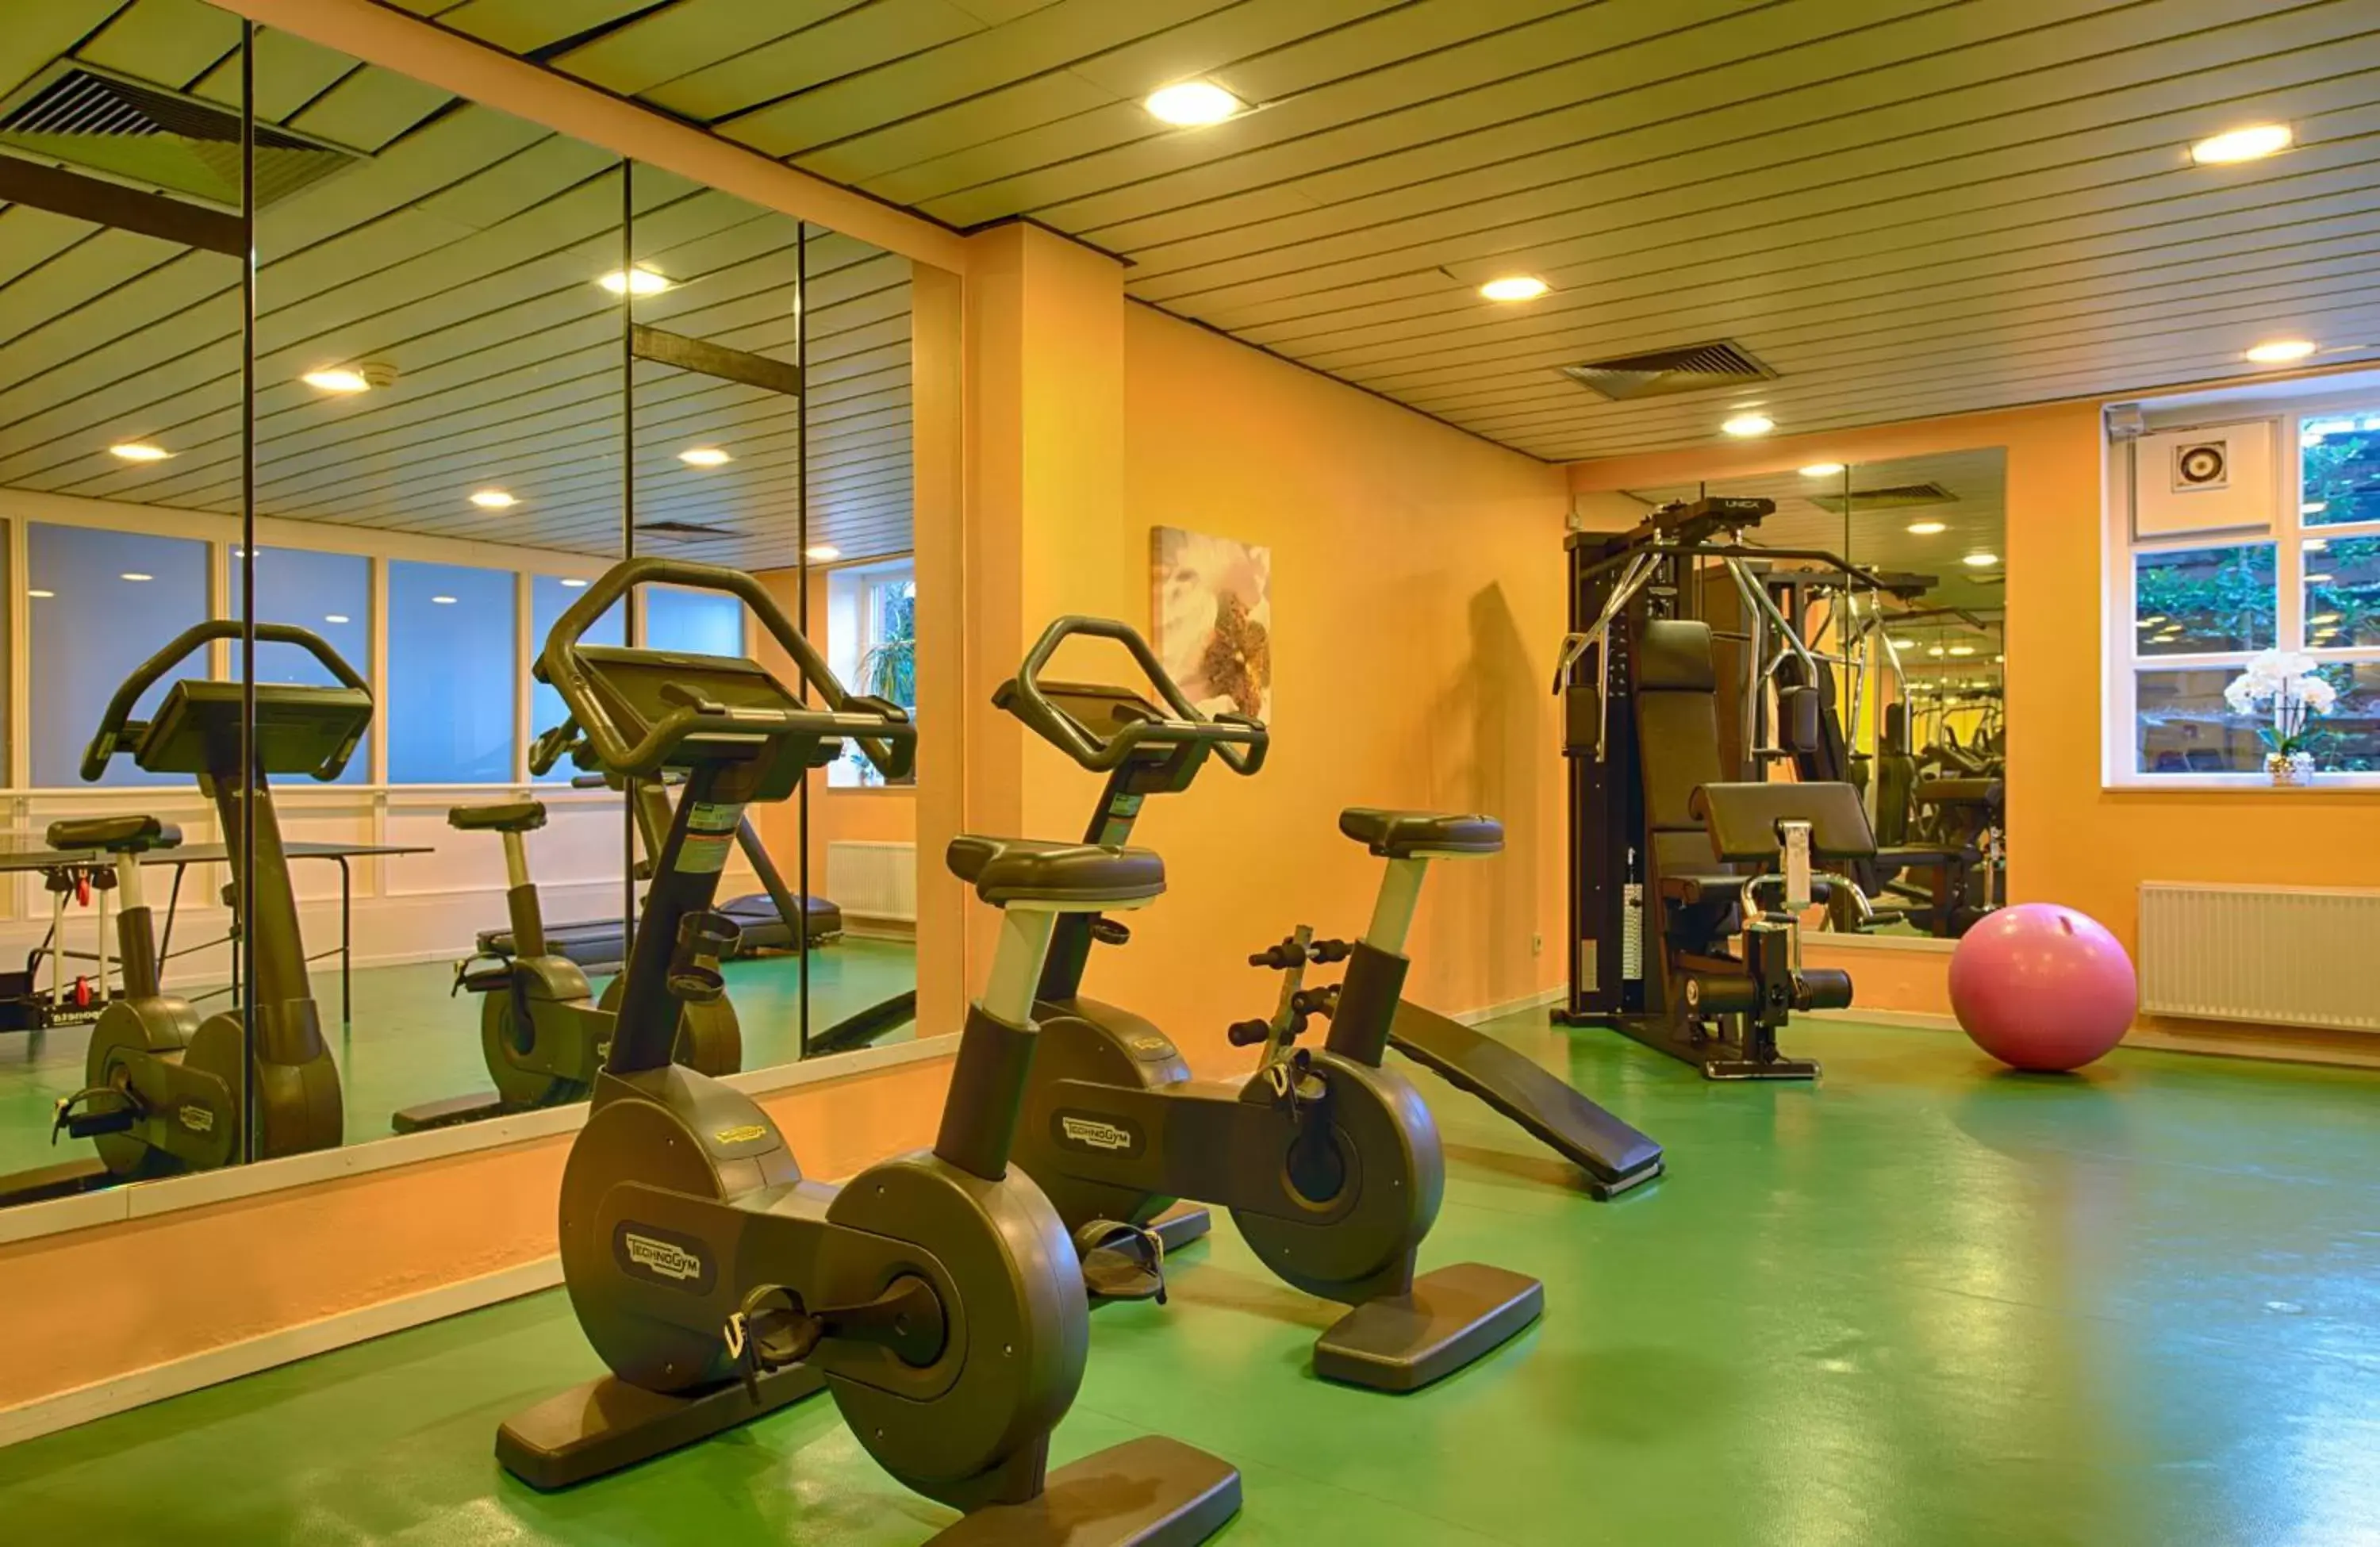 Fitness centre/facilities, Fitness Center/Facilities in Leonardo Hotel Hamburg Stillhorn